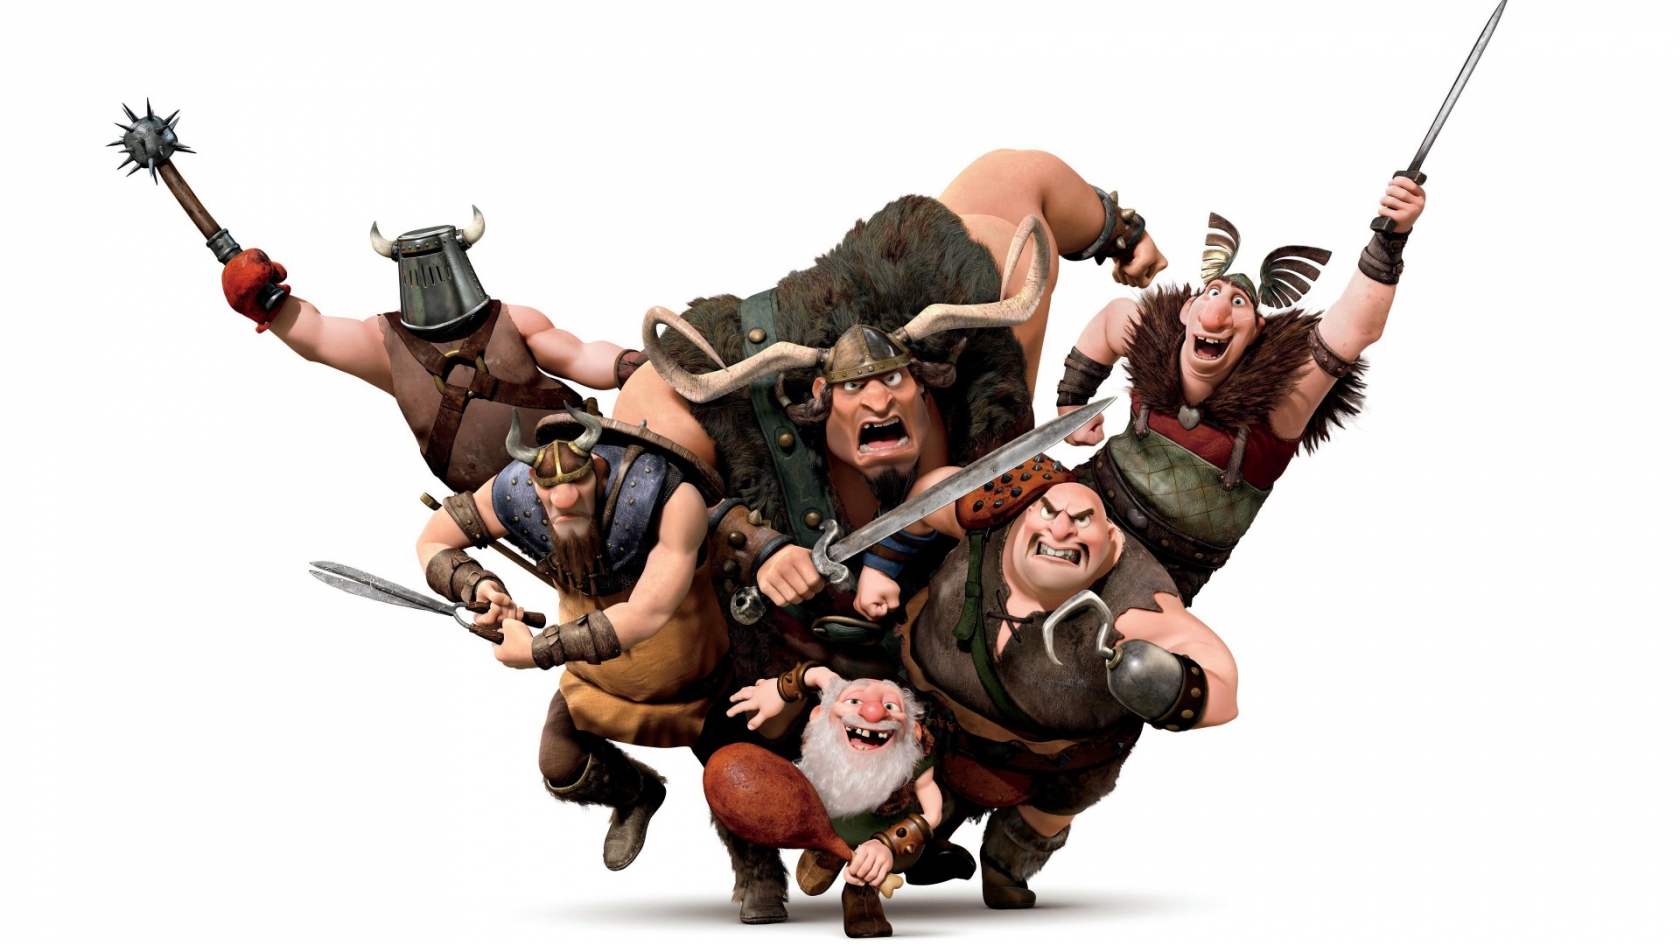 Vikings Warriors for 1680 x 945 HDTV resolution